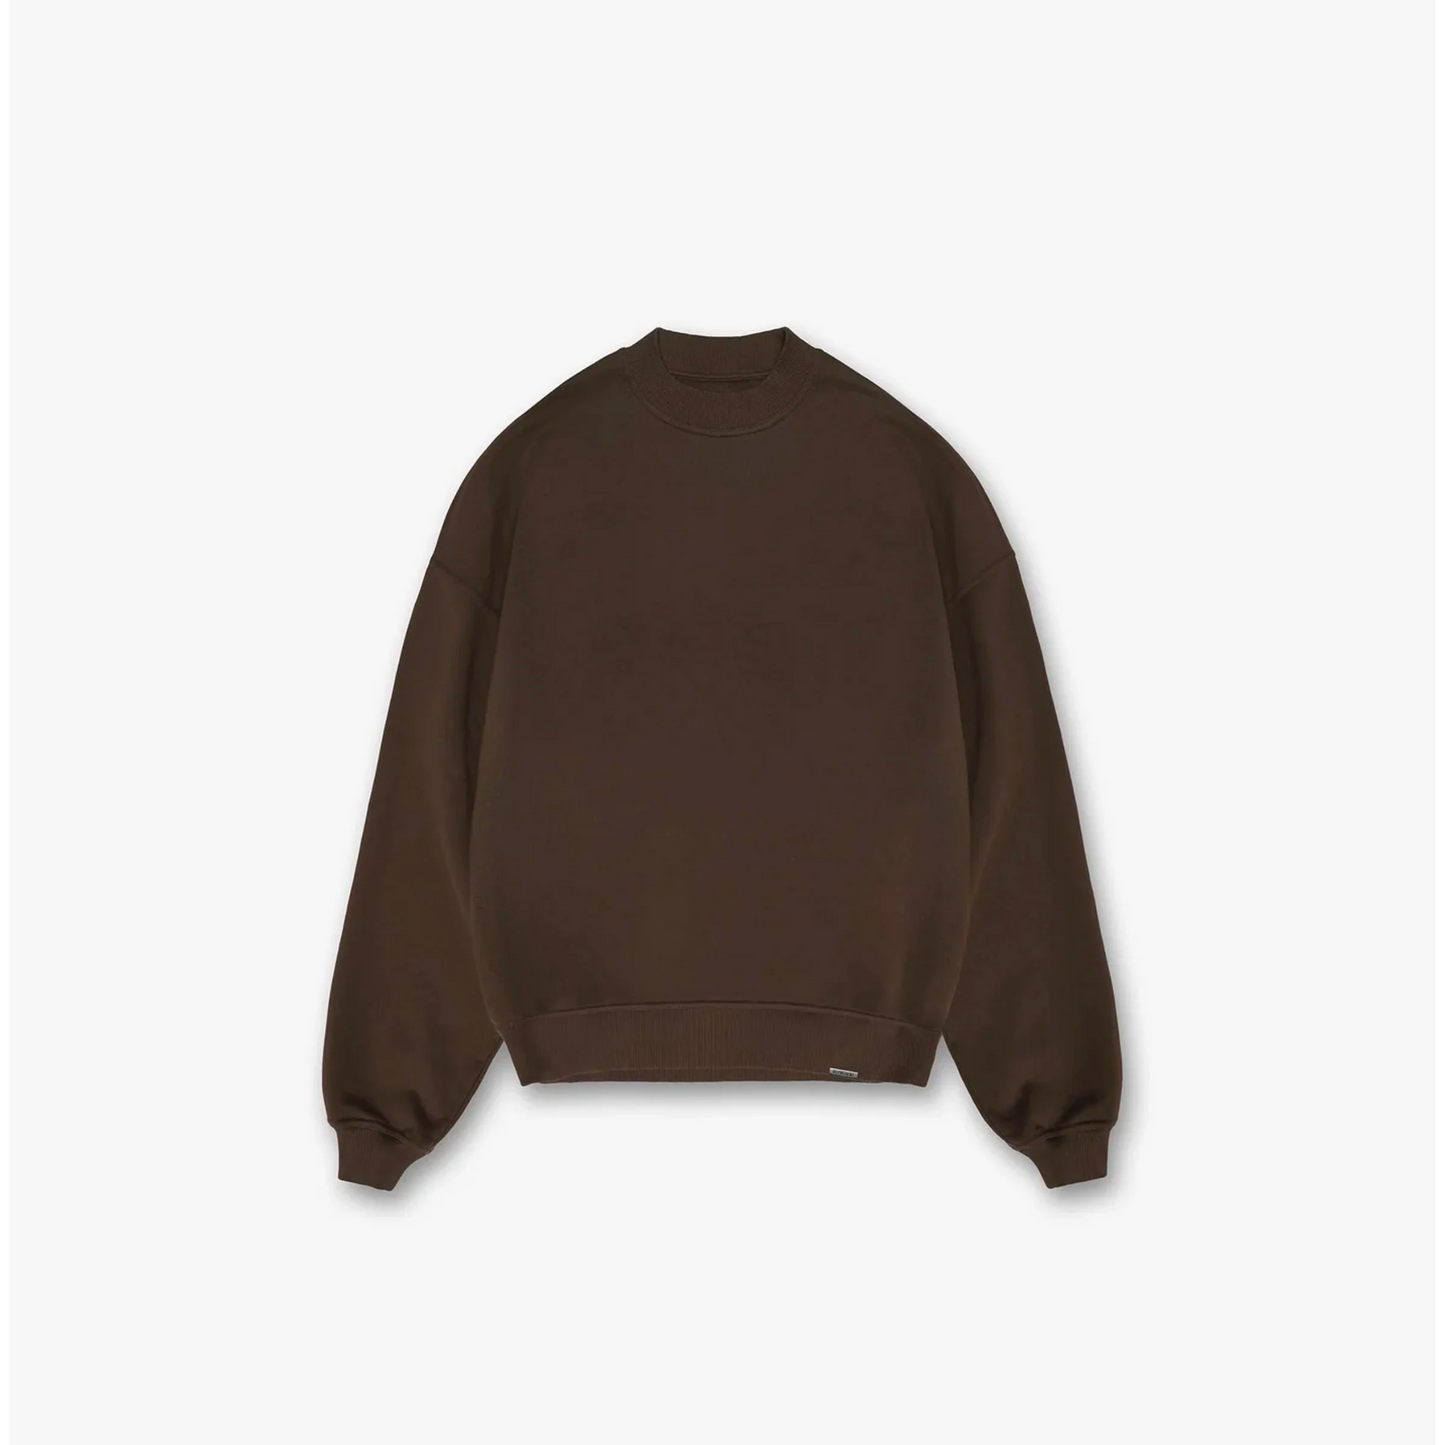 Mocha Brown - Luxury Sweatshirt